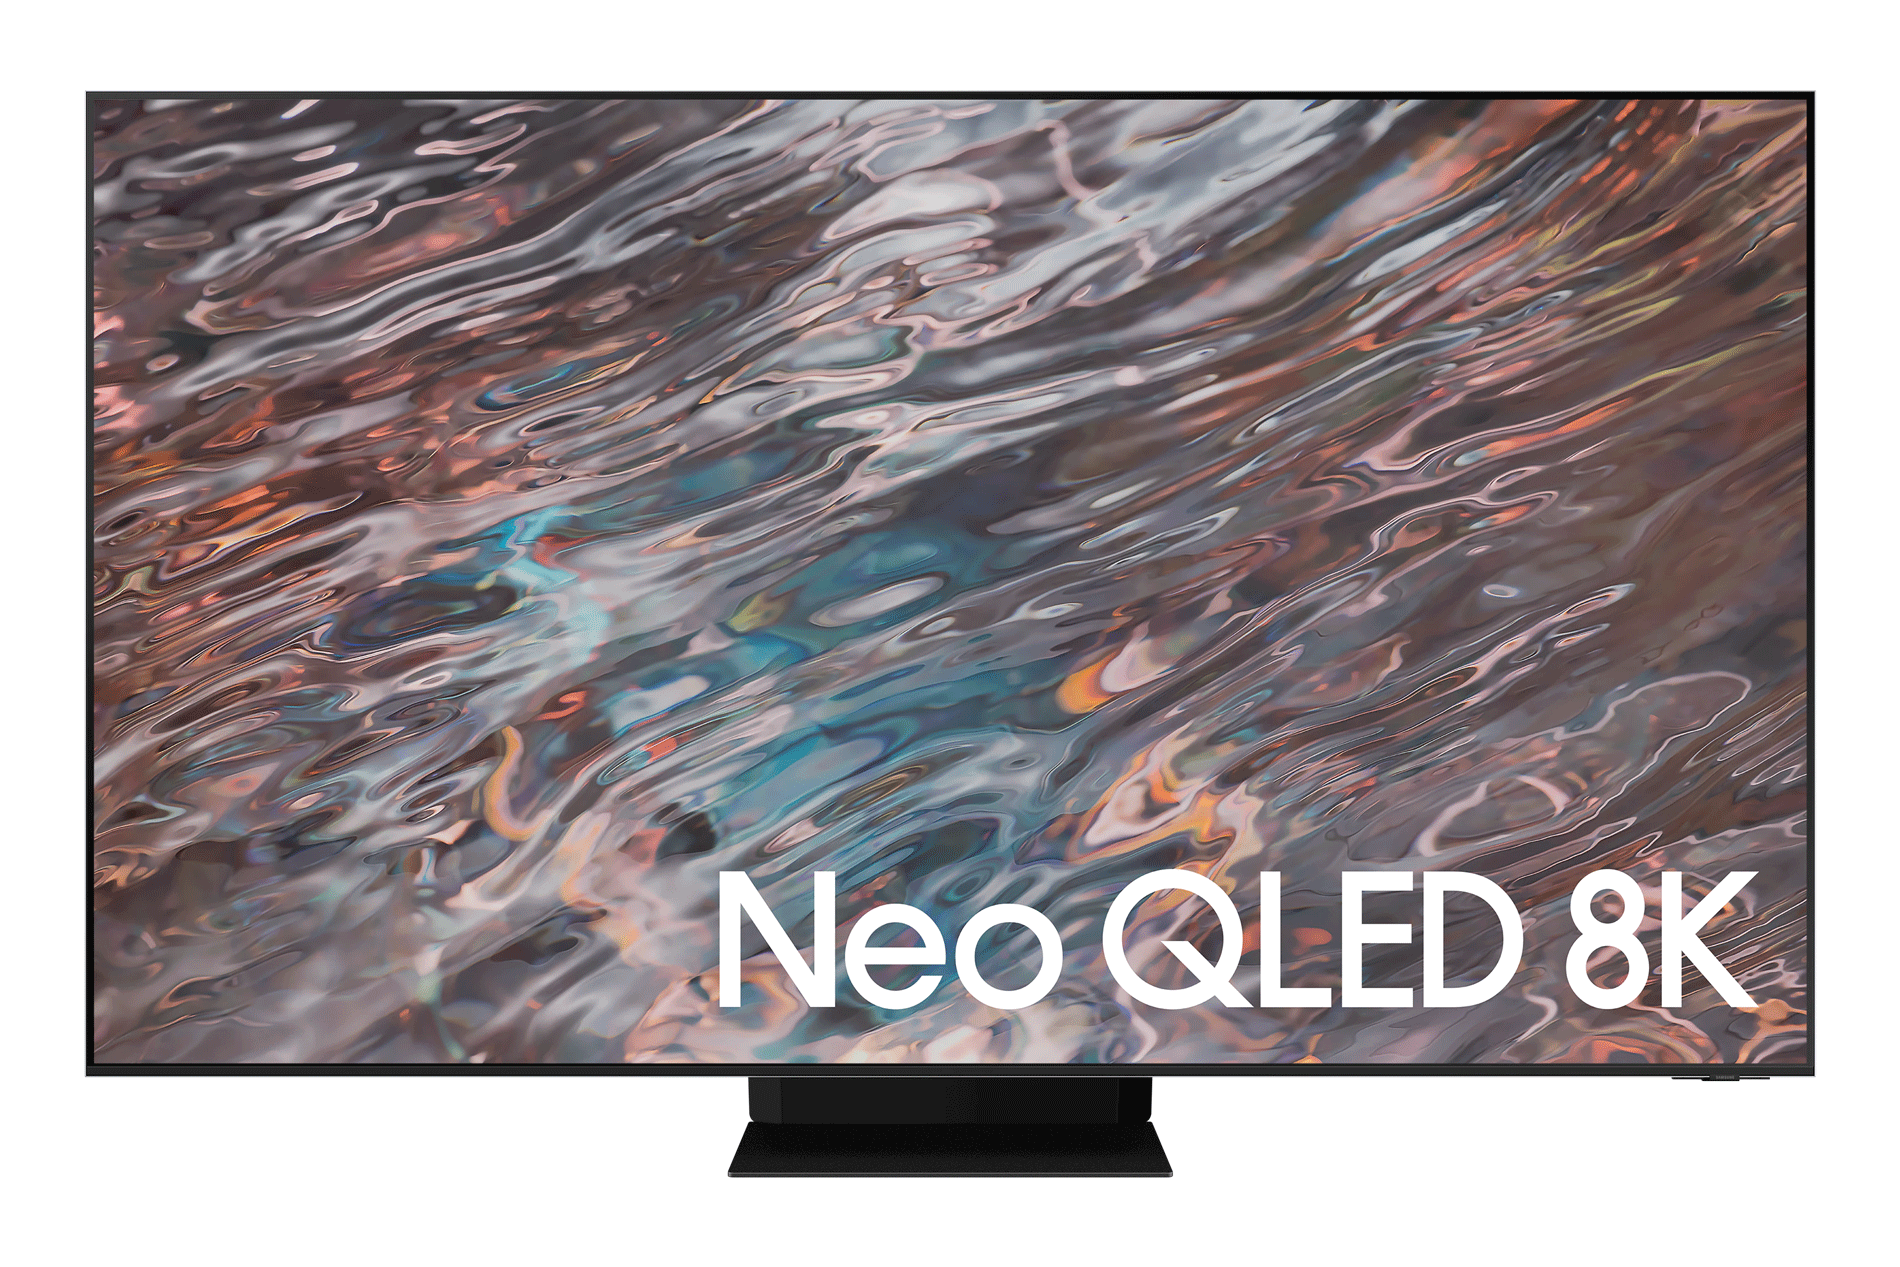 85英寸级Neo QLED 8K电视QN800A-8K视界展现丰富细节| 三星电子中国